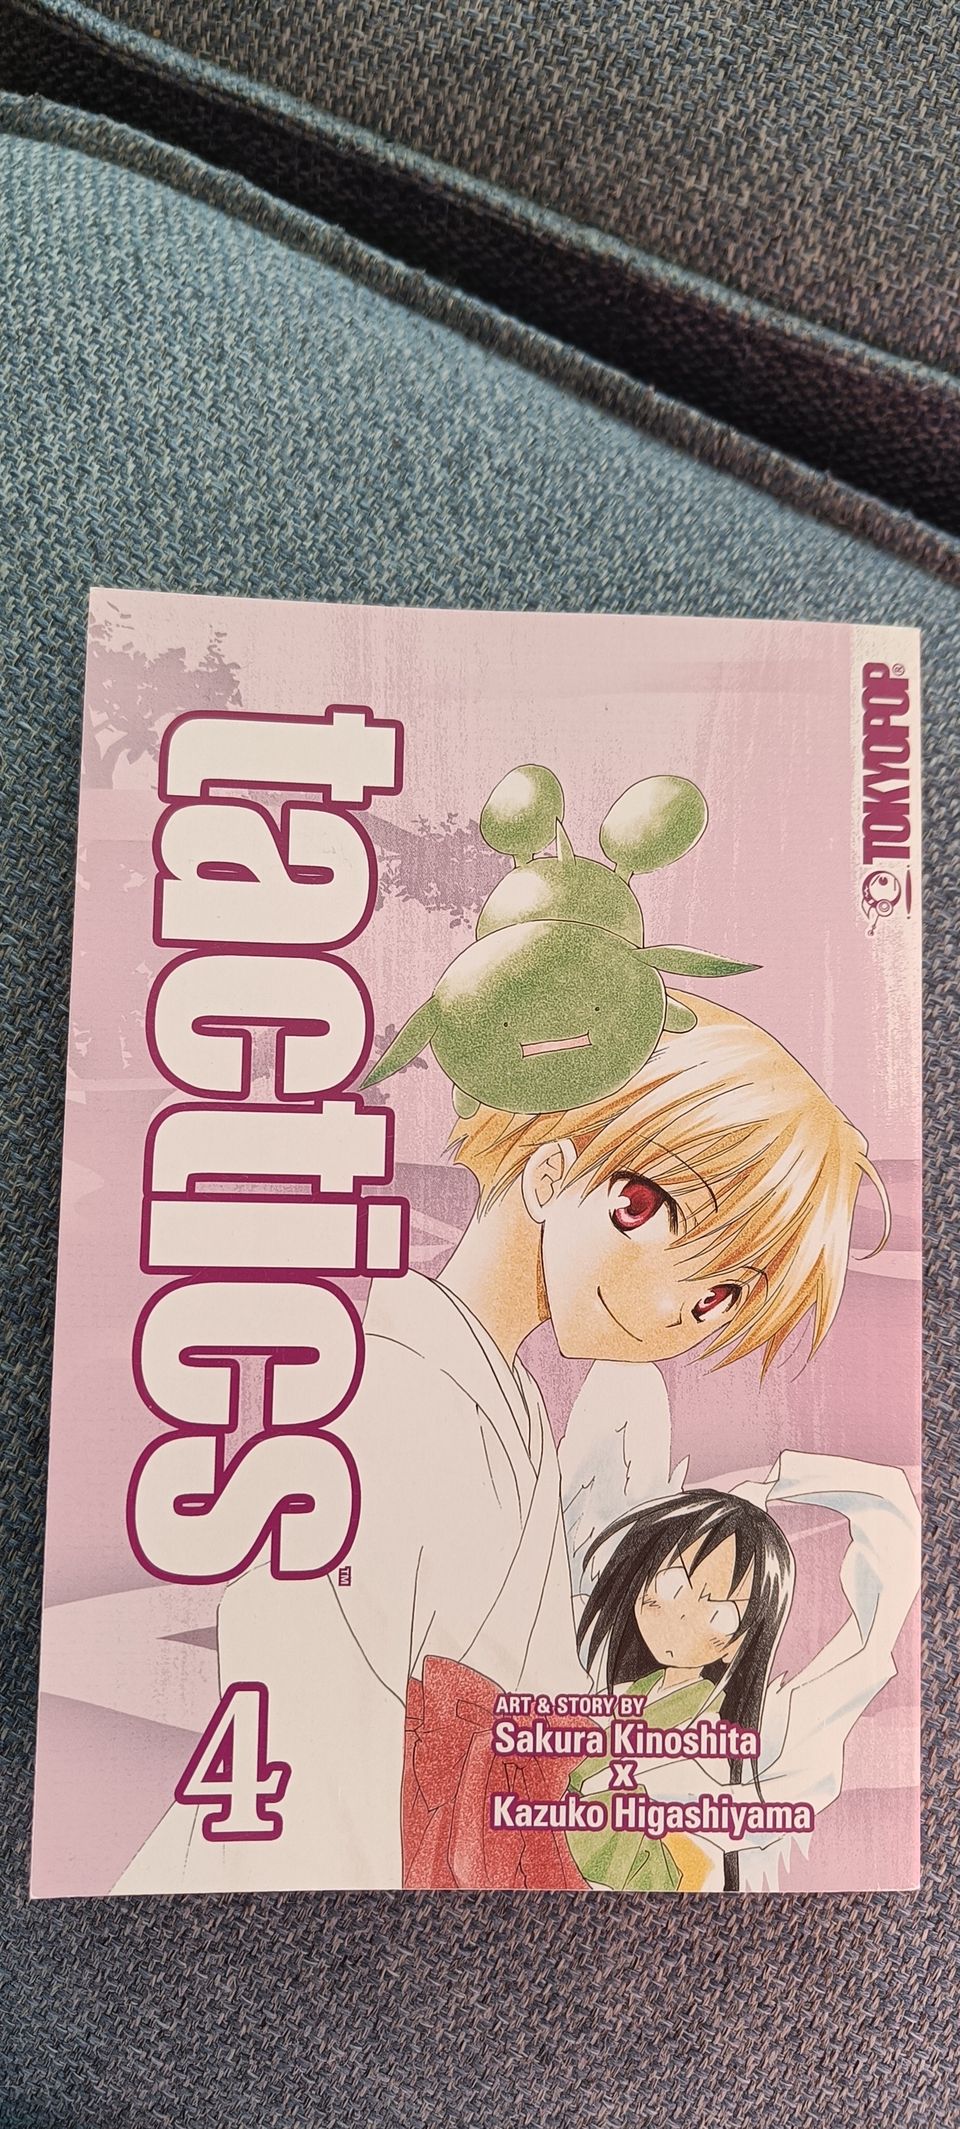 Tactics manga vol.4